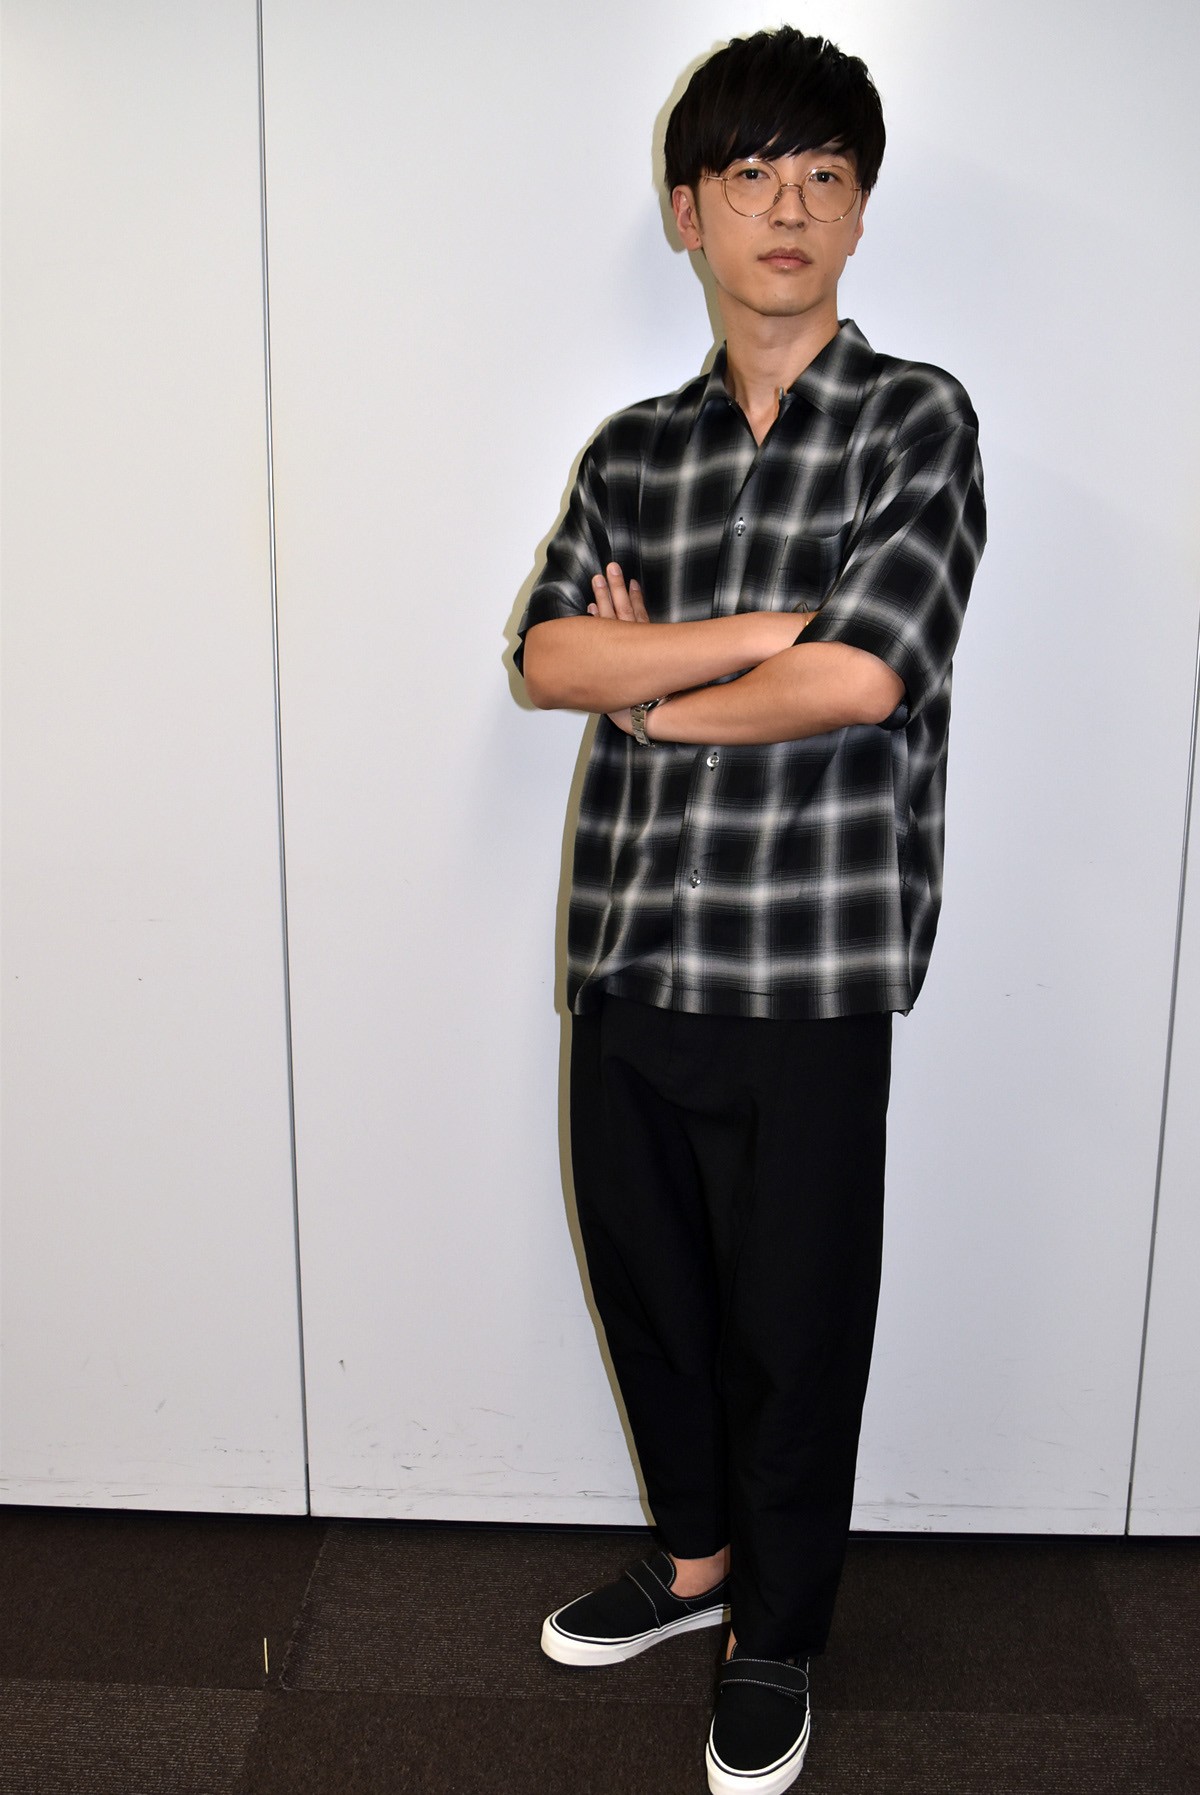 櫻井孝宏、声優への道は「生まれて初めて、自分で決めたこと」